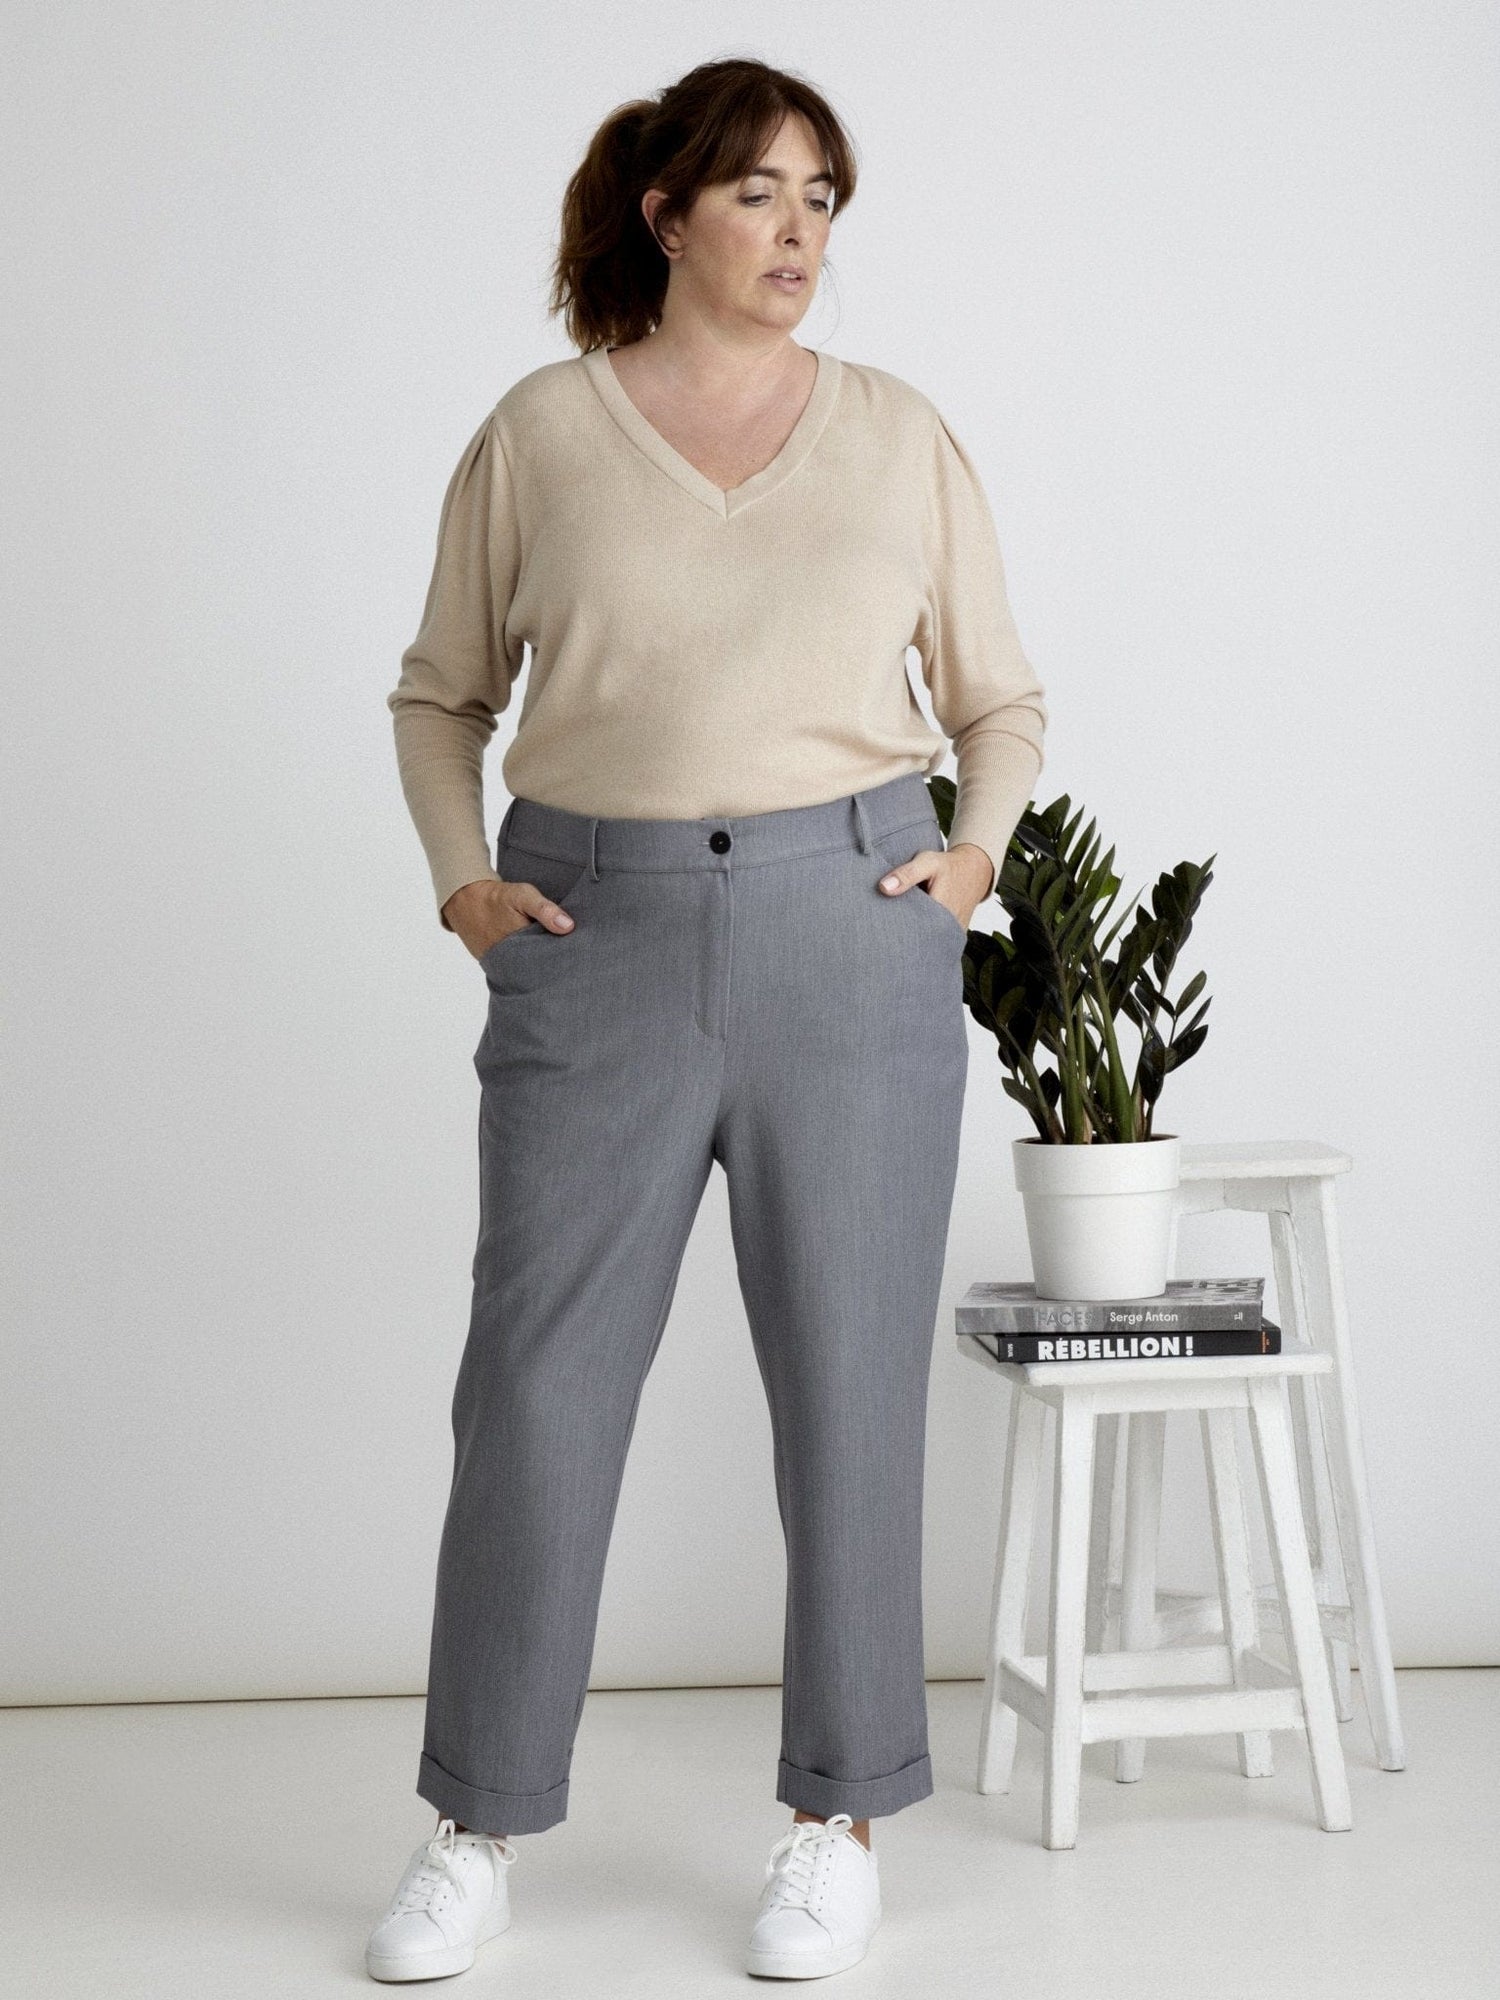 Les Militantes - Maurice pantalon gris 7/8 grande taille  chic, tendance hanches larges de qualité made in France 